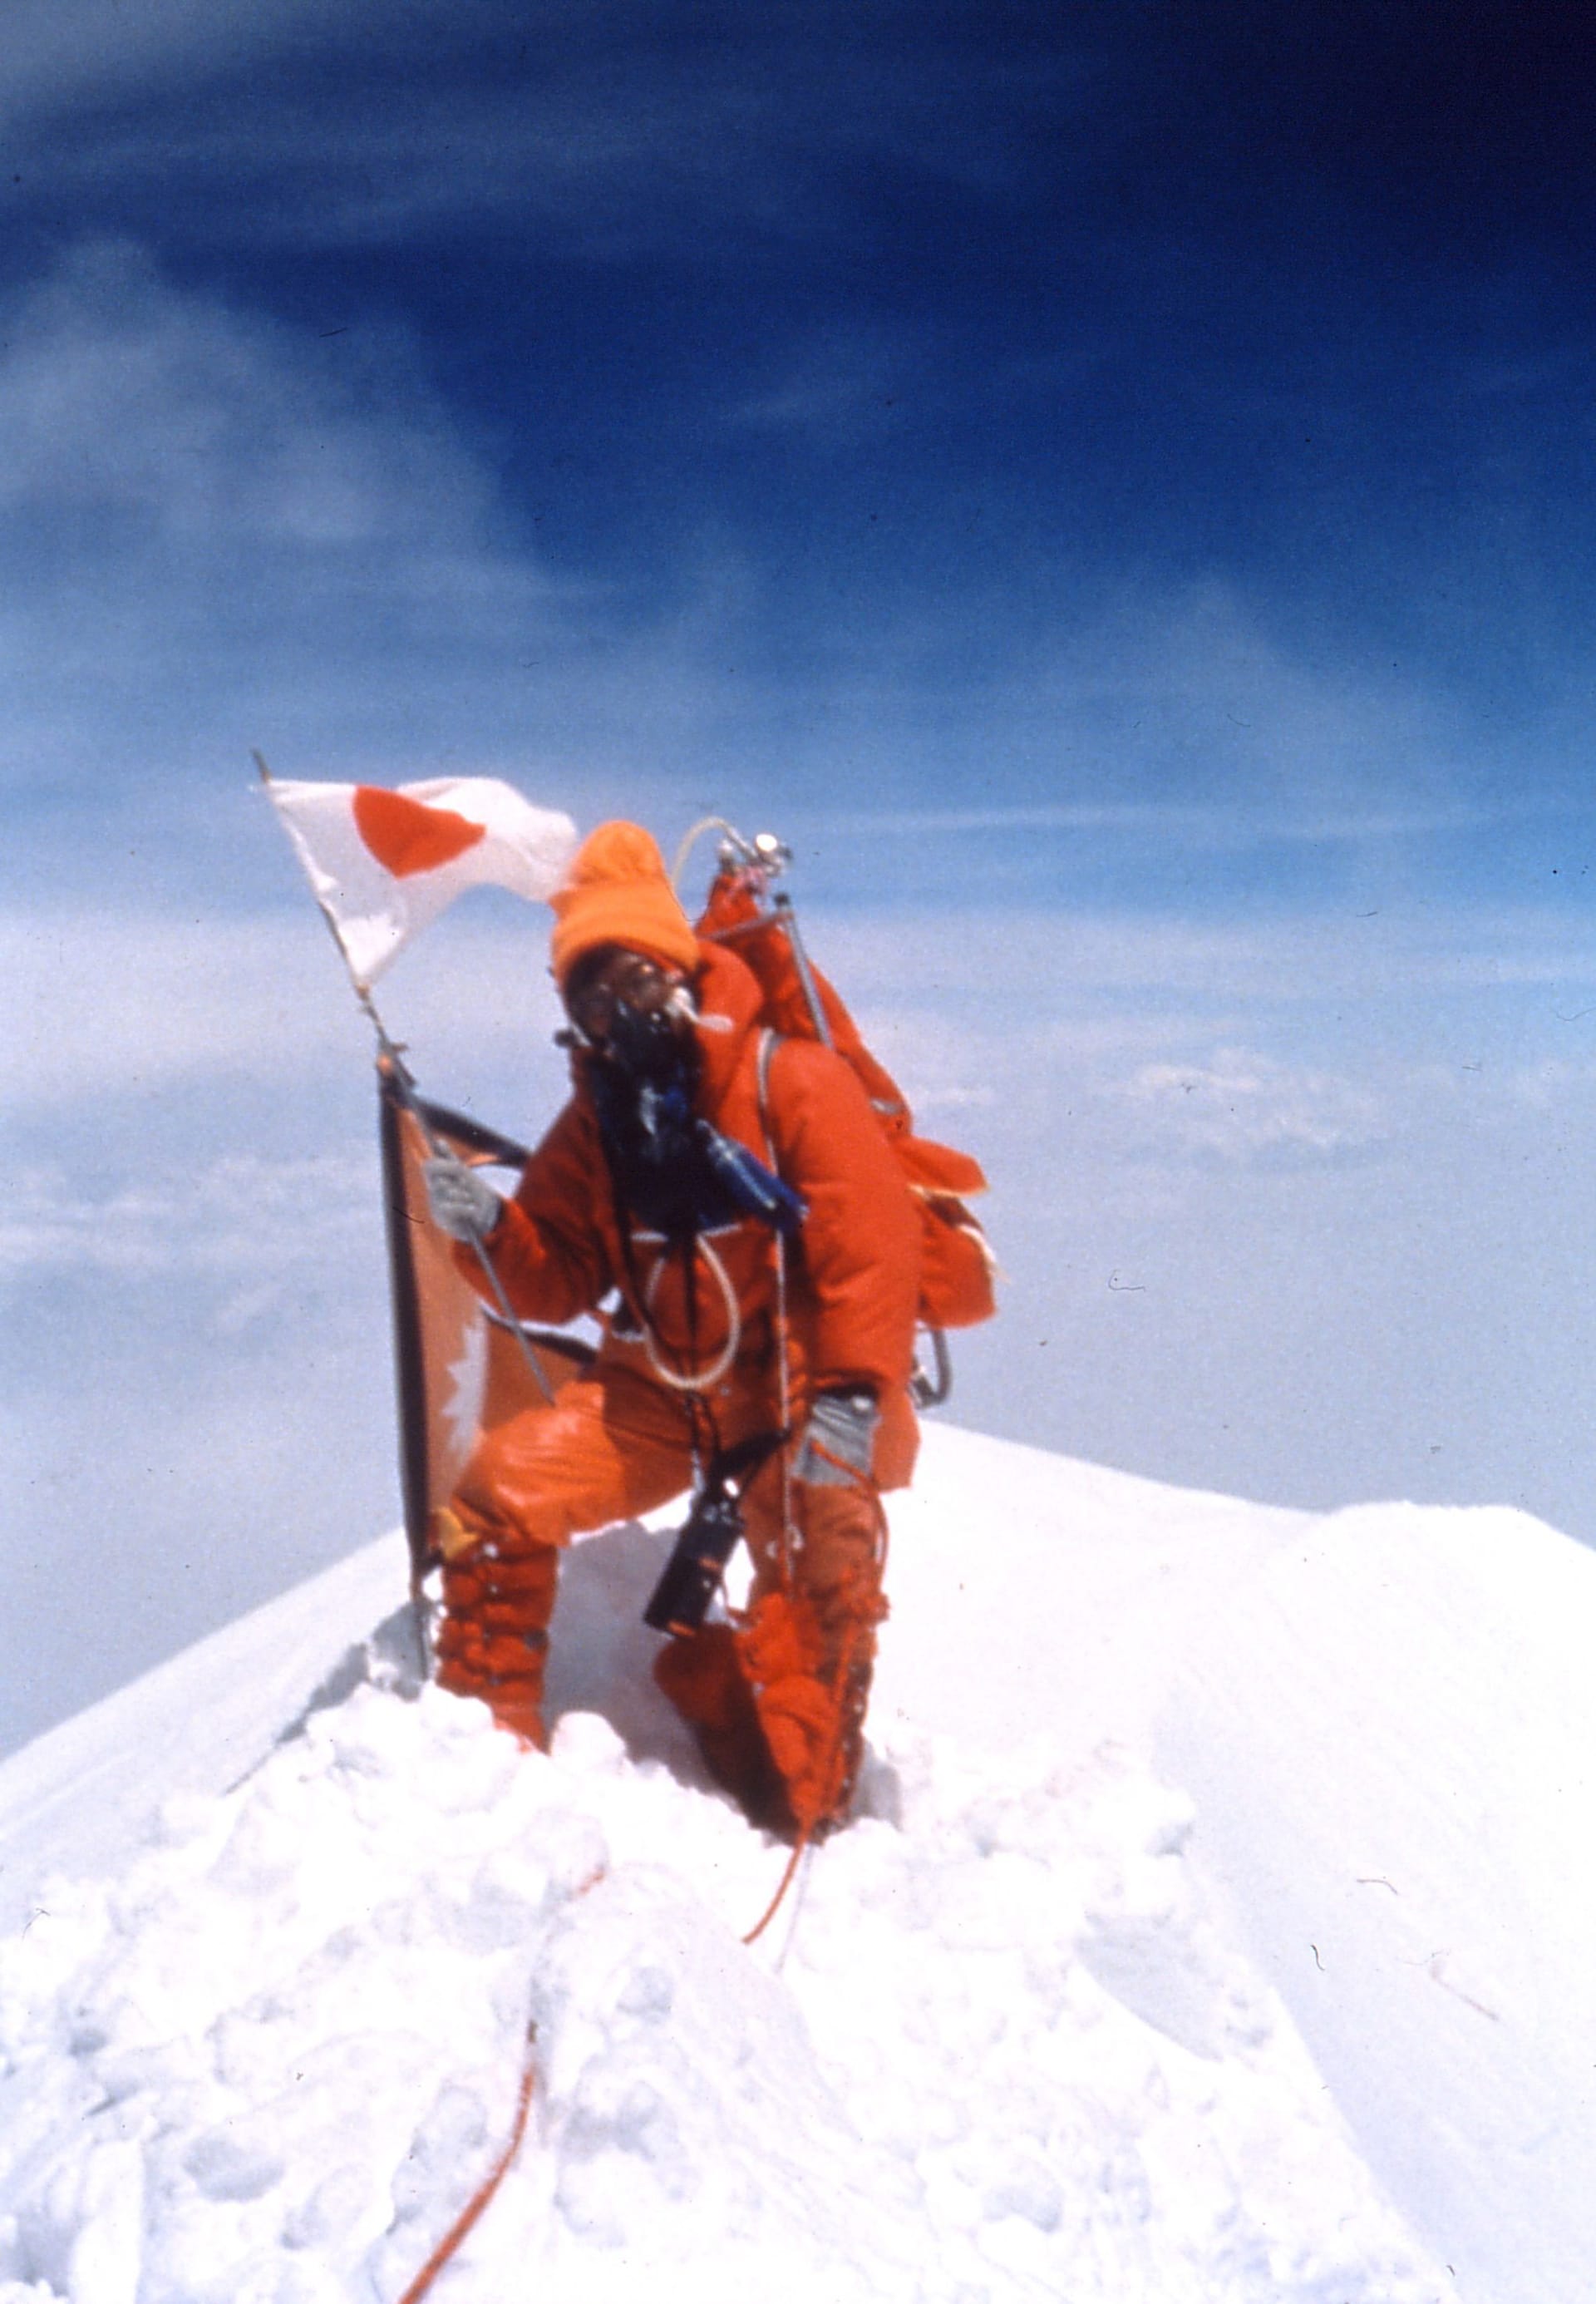 16.05.1975: Die Frau, die den Mount Everest bezwang